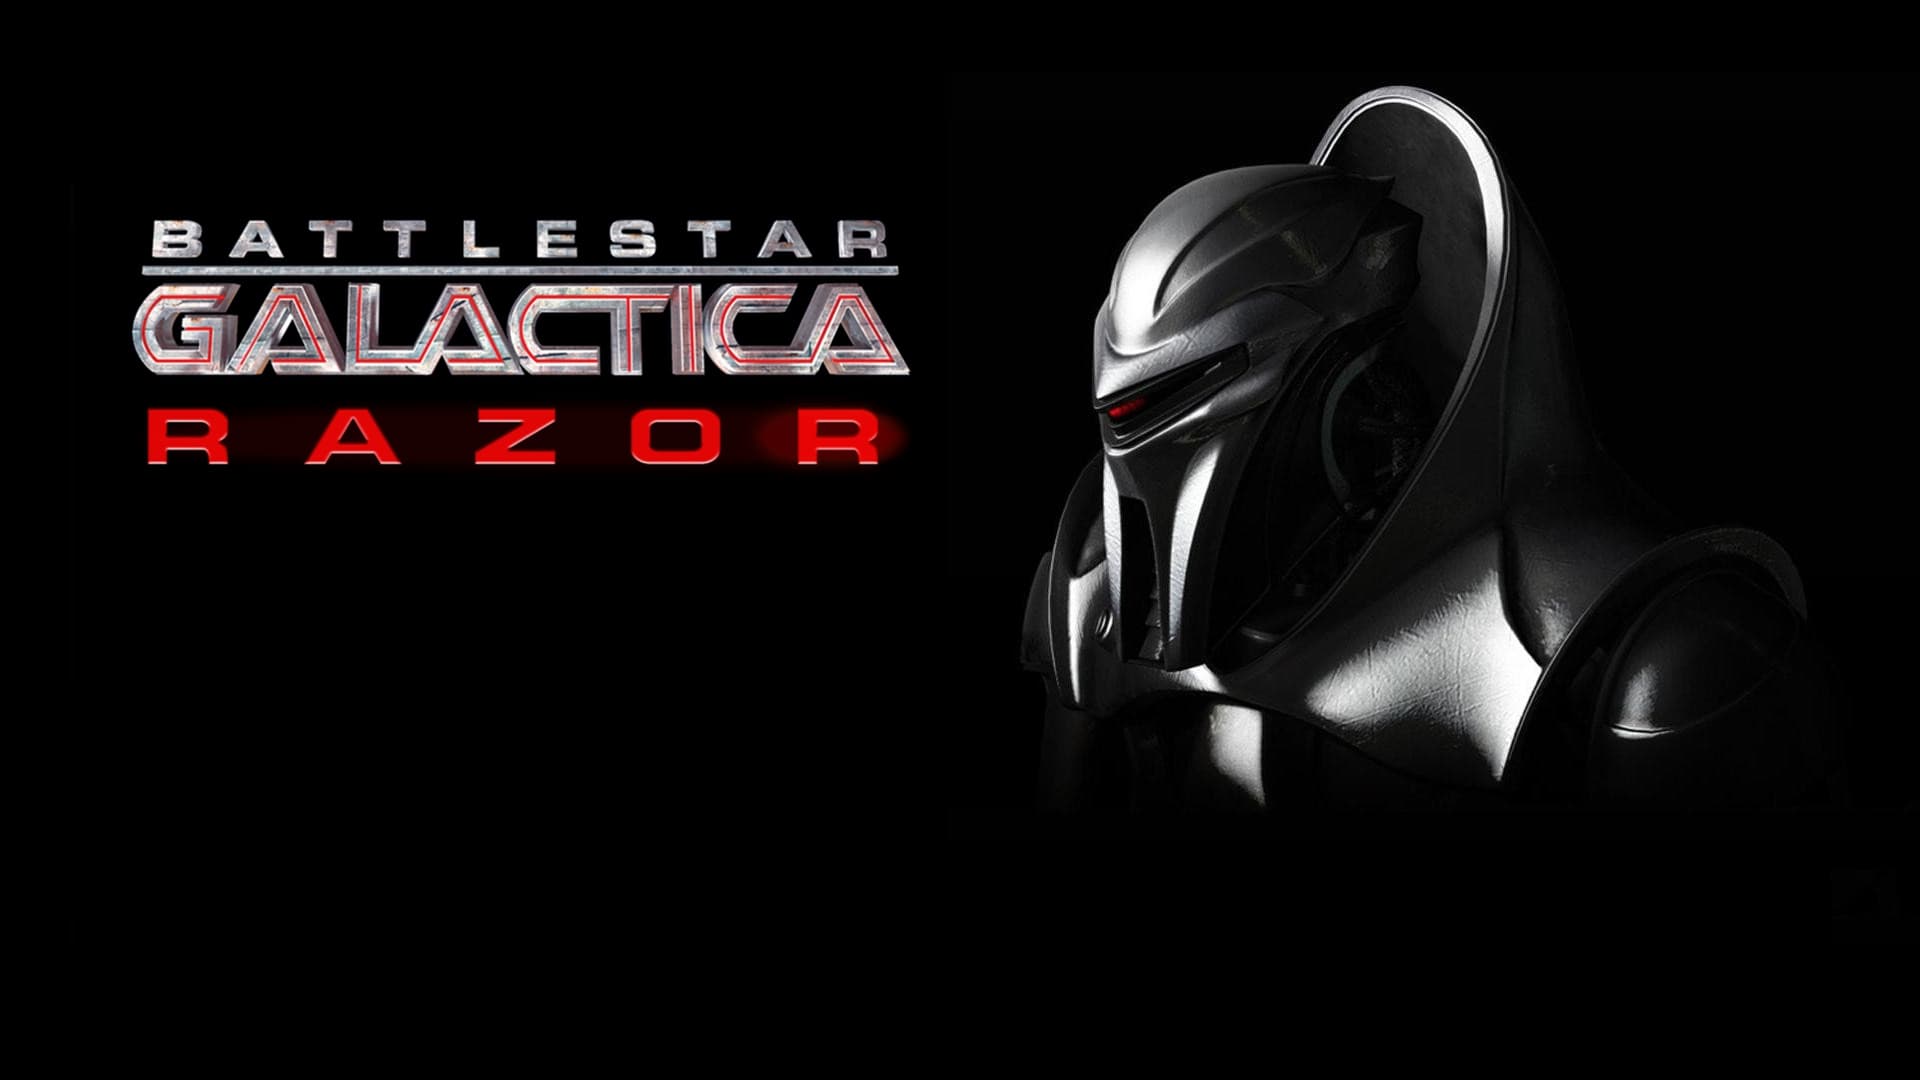 Battlestar Galactica: Razor (2007)